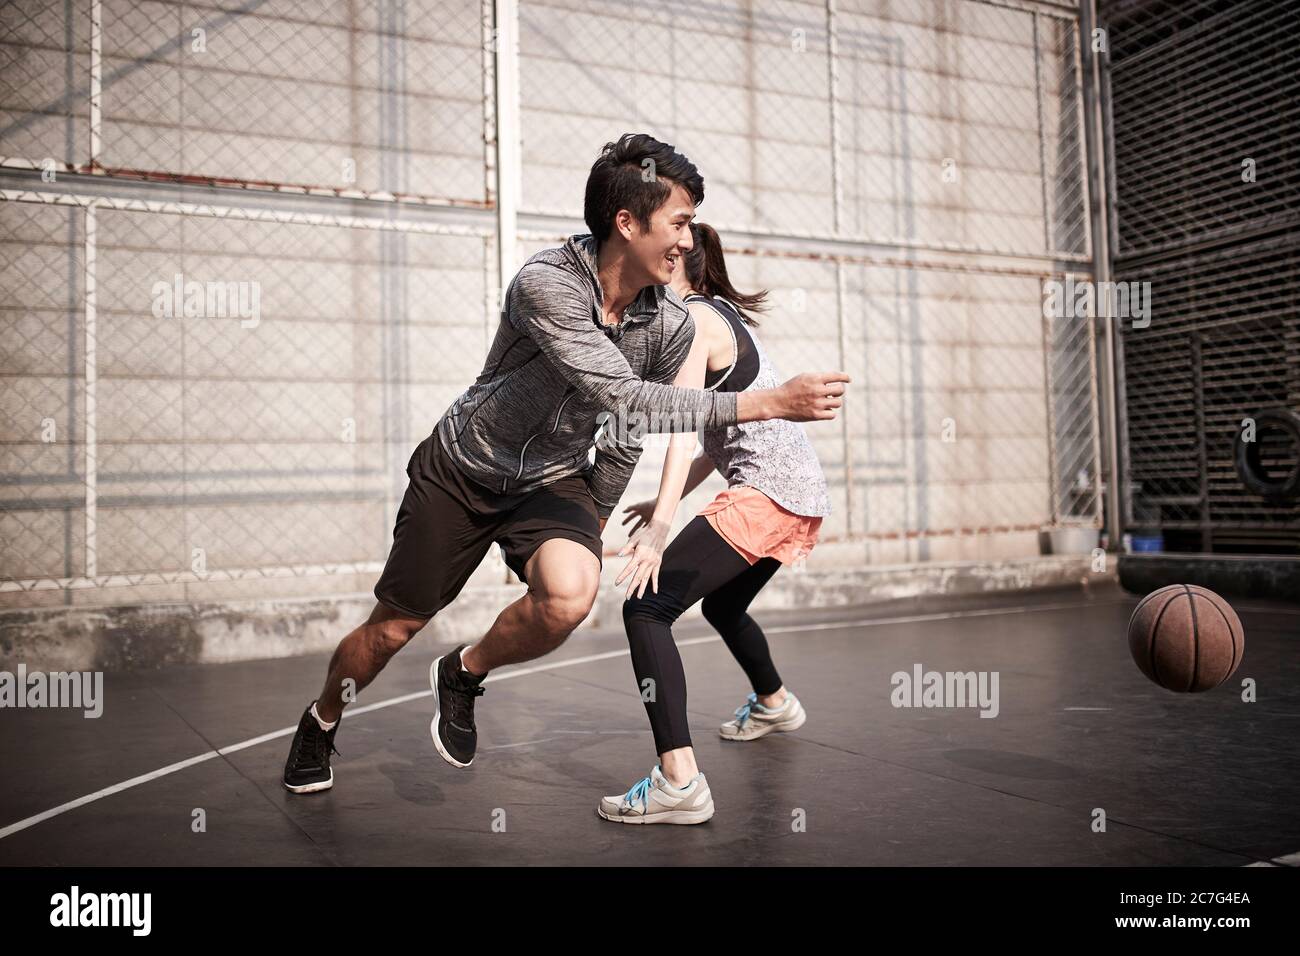 jeune homme et femme asiatique adulte s'amusant à jouer au basket-ball sur un terrain extérieur Banque D'Images